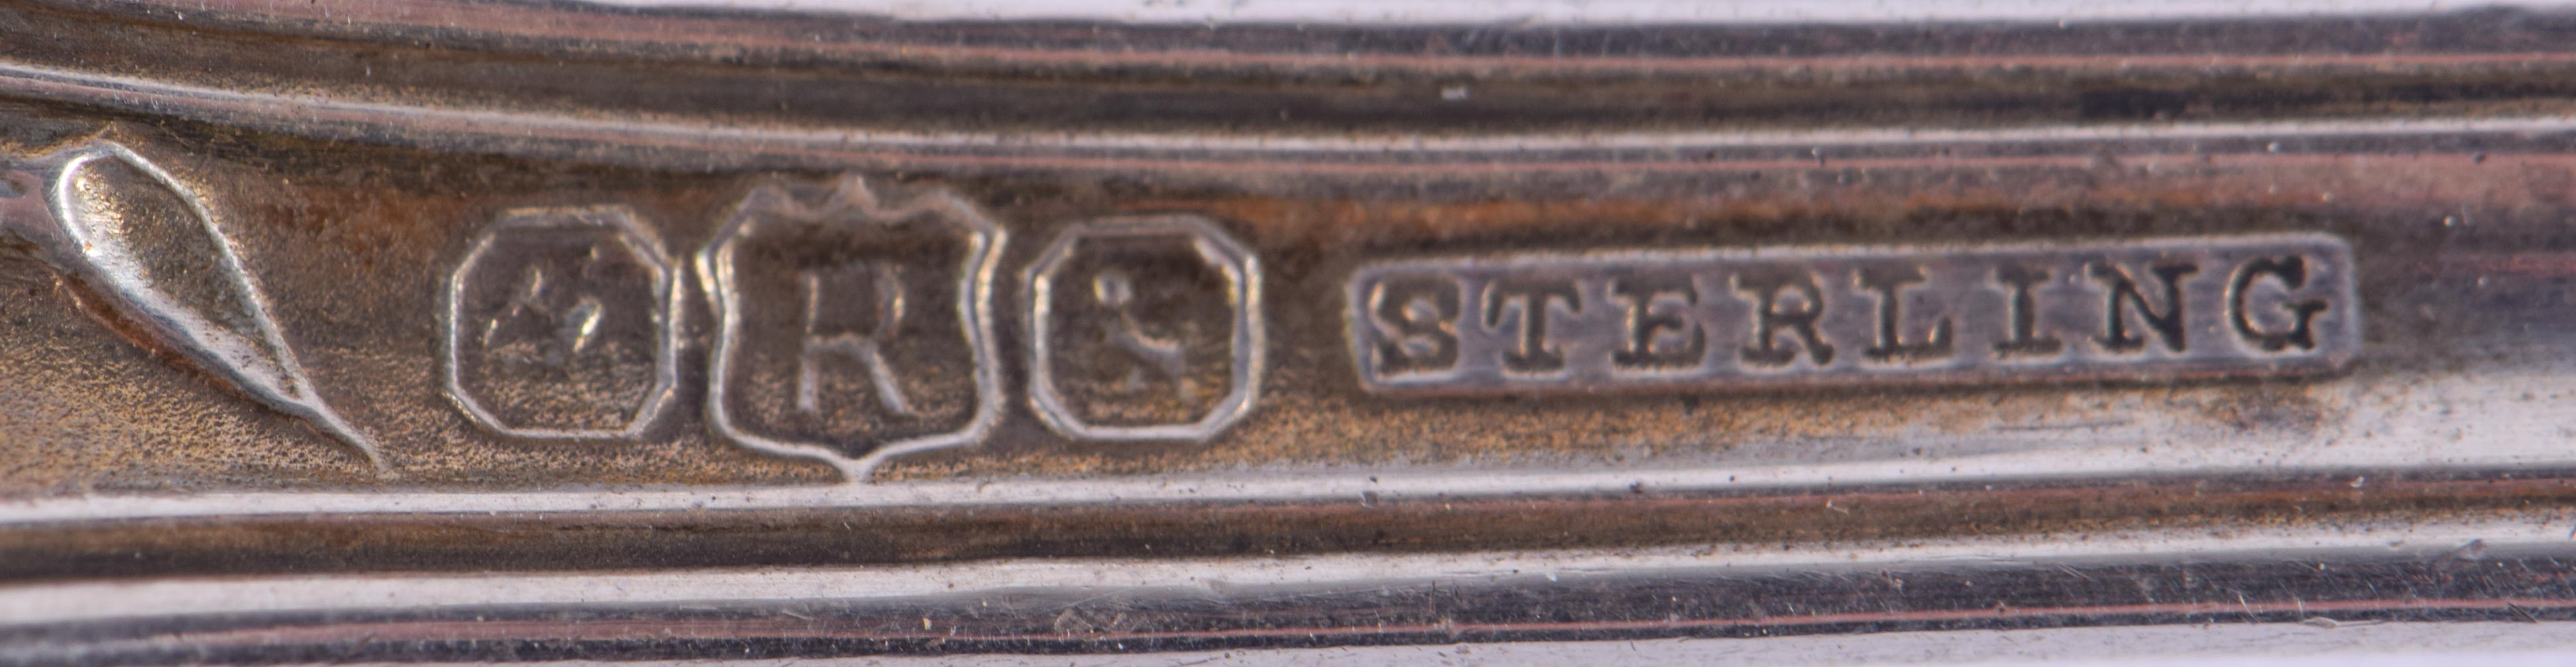 AN UNUSUAL STERLING SILVER ENAMELLED SPOON. 41 grams. 16 cm long. - Image 4 of 4